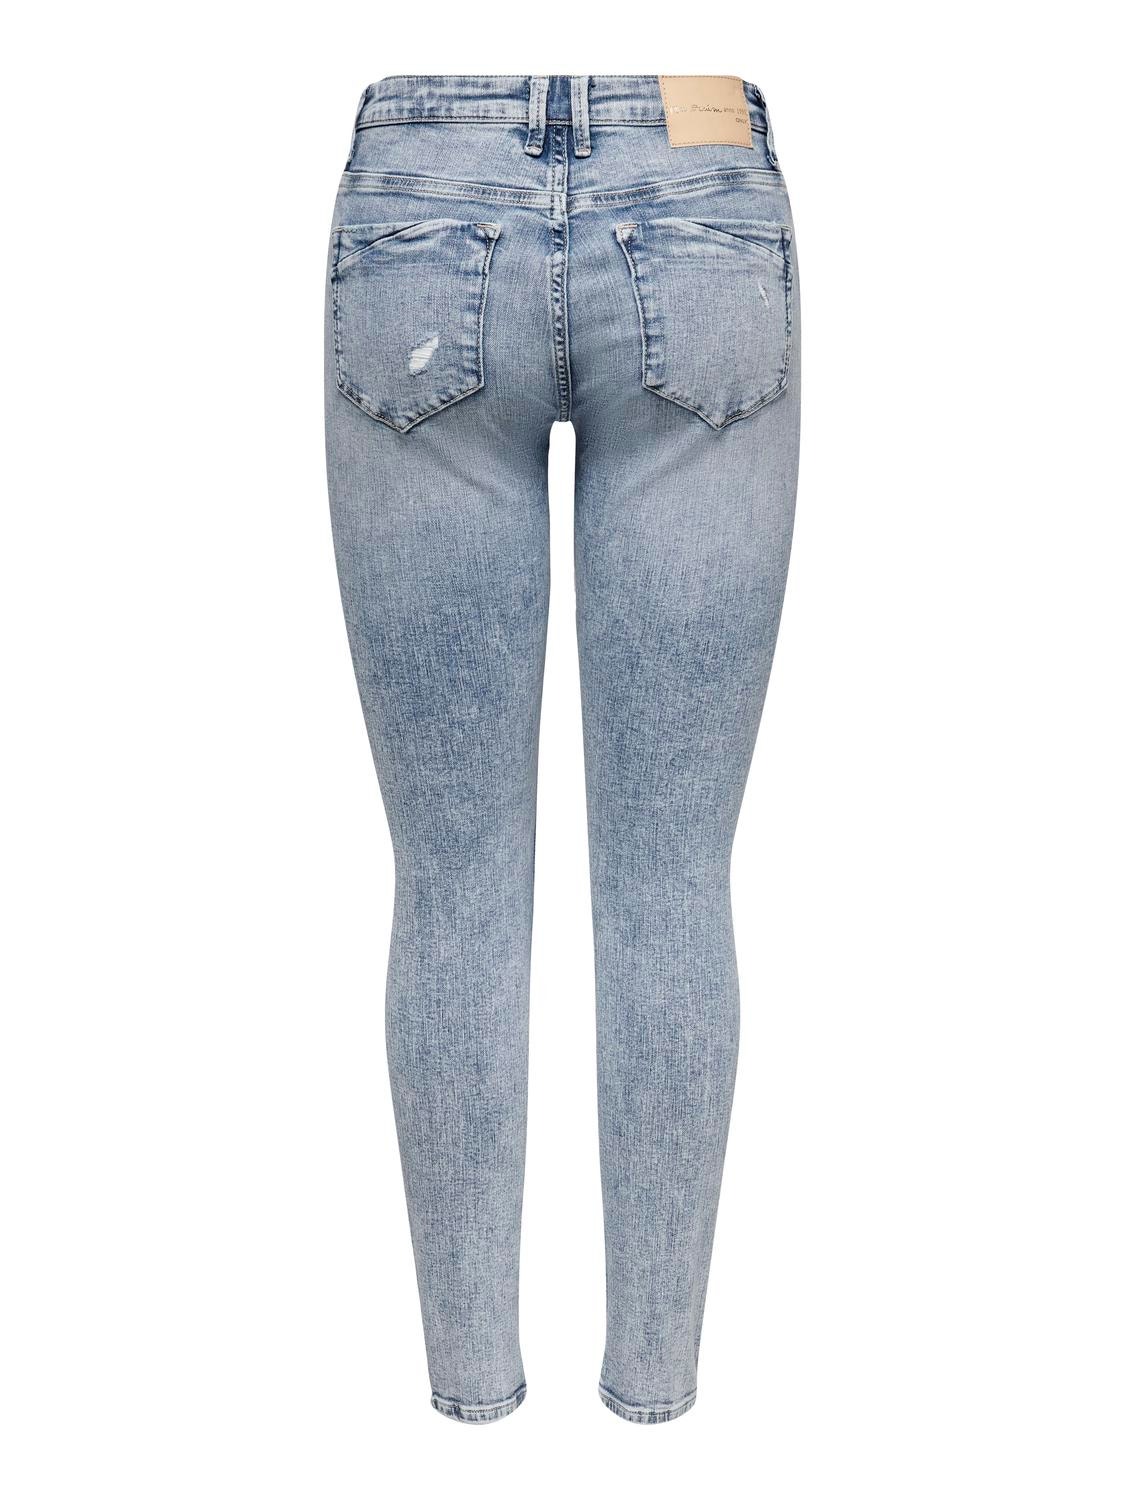 ONLY ONLCARMEN LIFE REGULAR Waist SKINNY ANKLE COIN DEStroyed Jeans -Light Blue Denim - 15245316